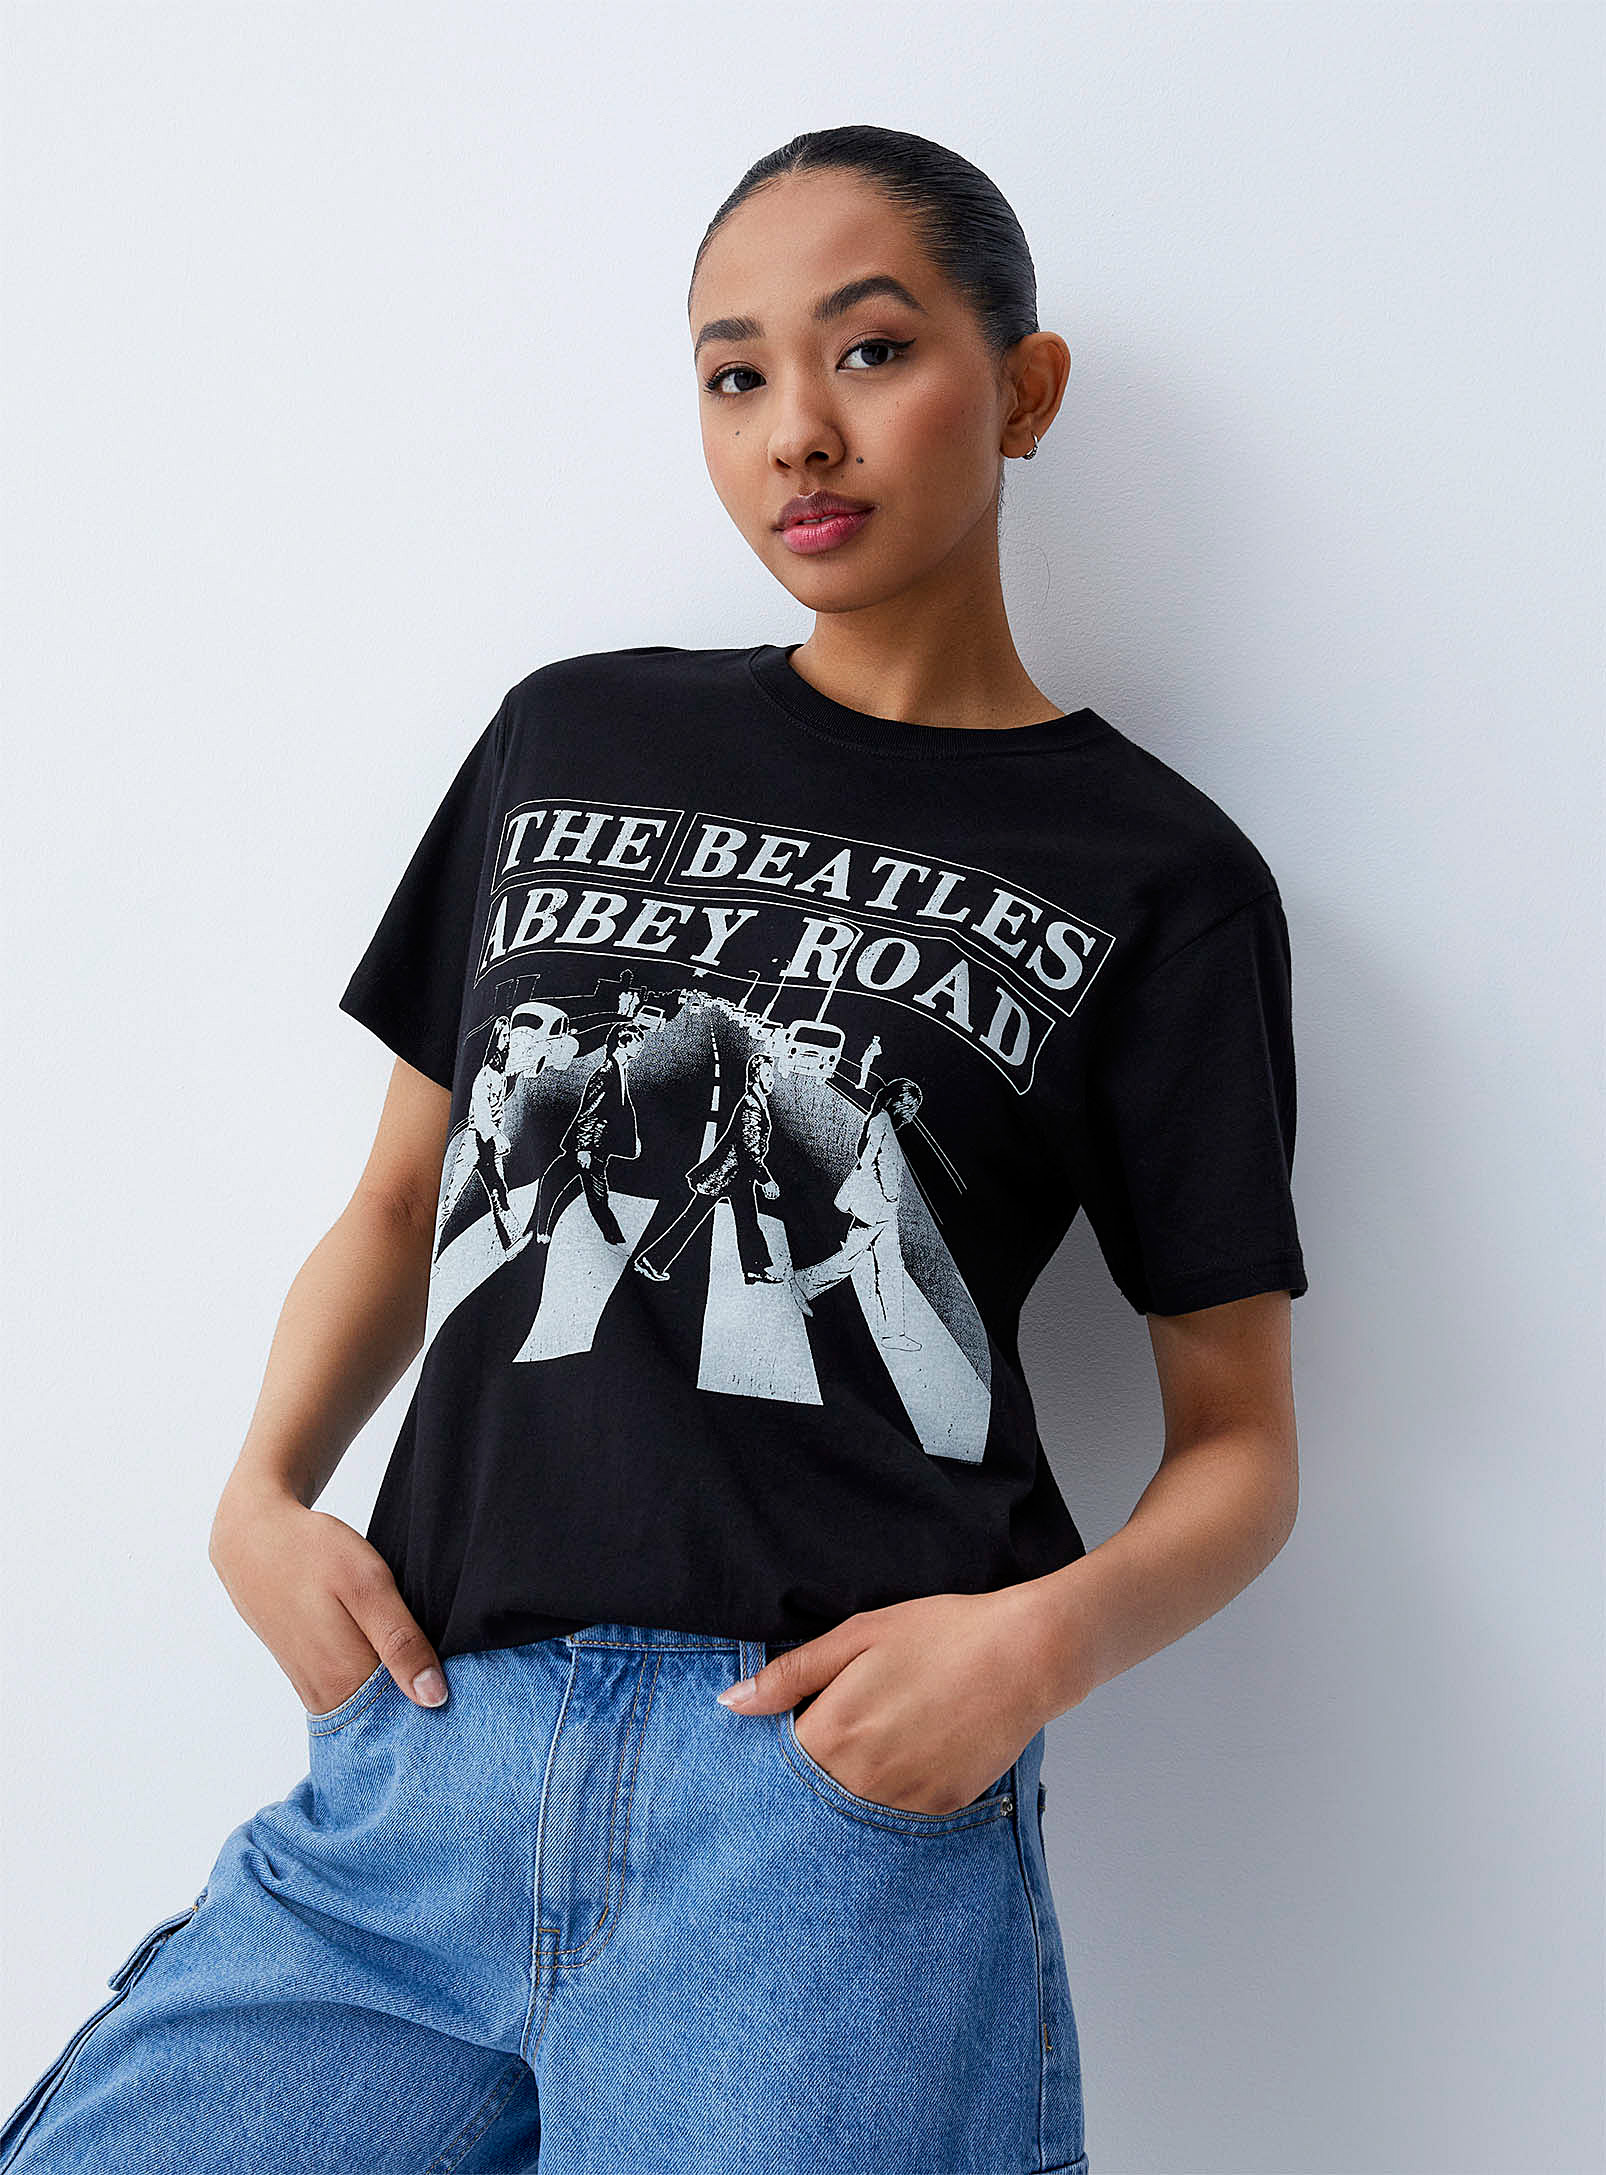 Twik Abbey Road T-shirt In Black